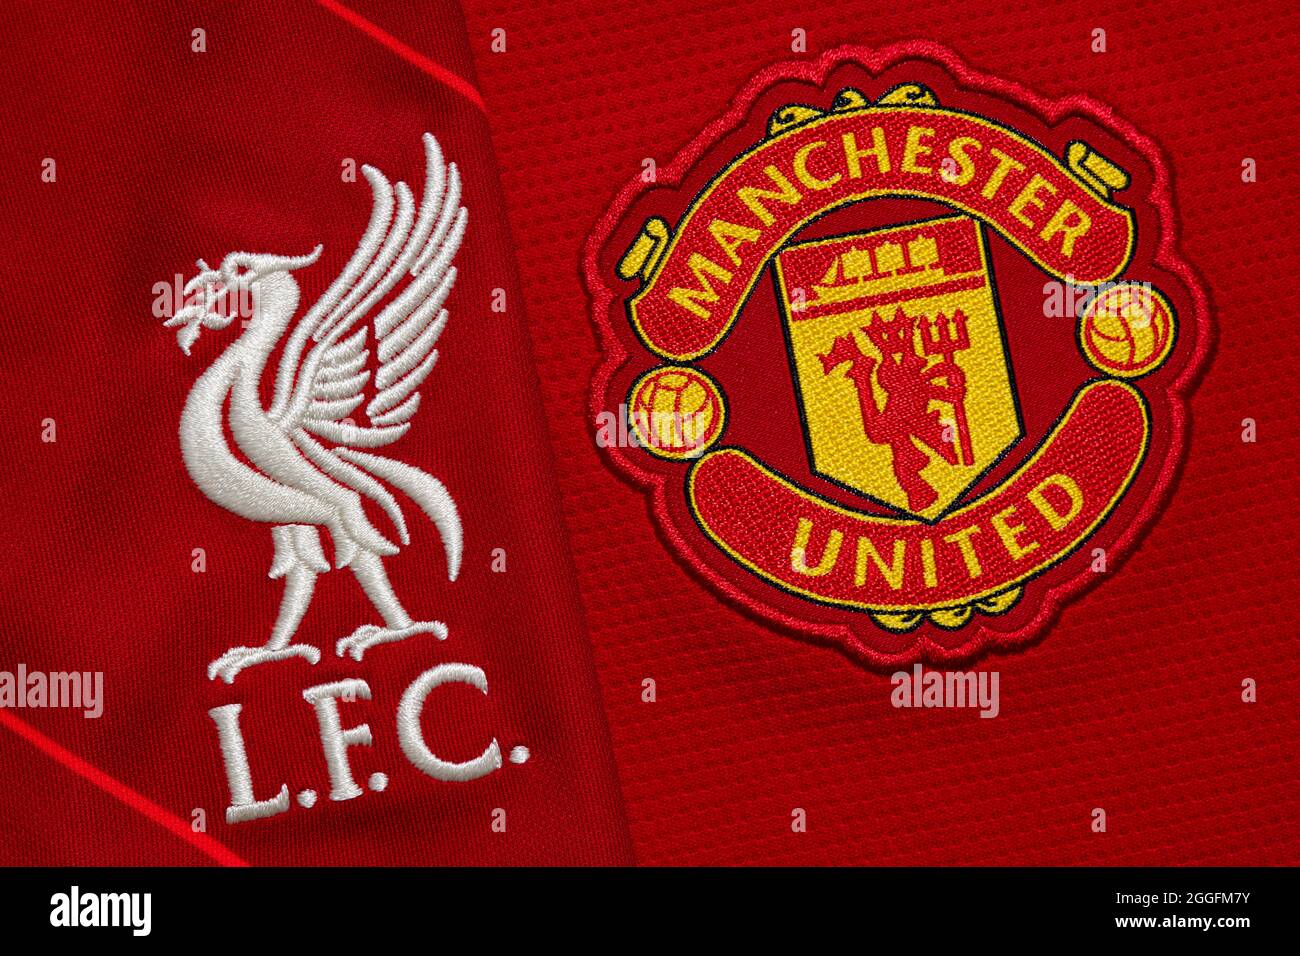 Nahaufnahme des Vereinswappens von Manchester United & Liverpool FC Stockfoto